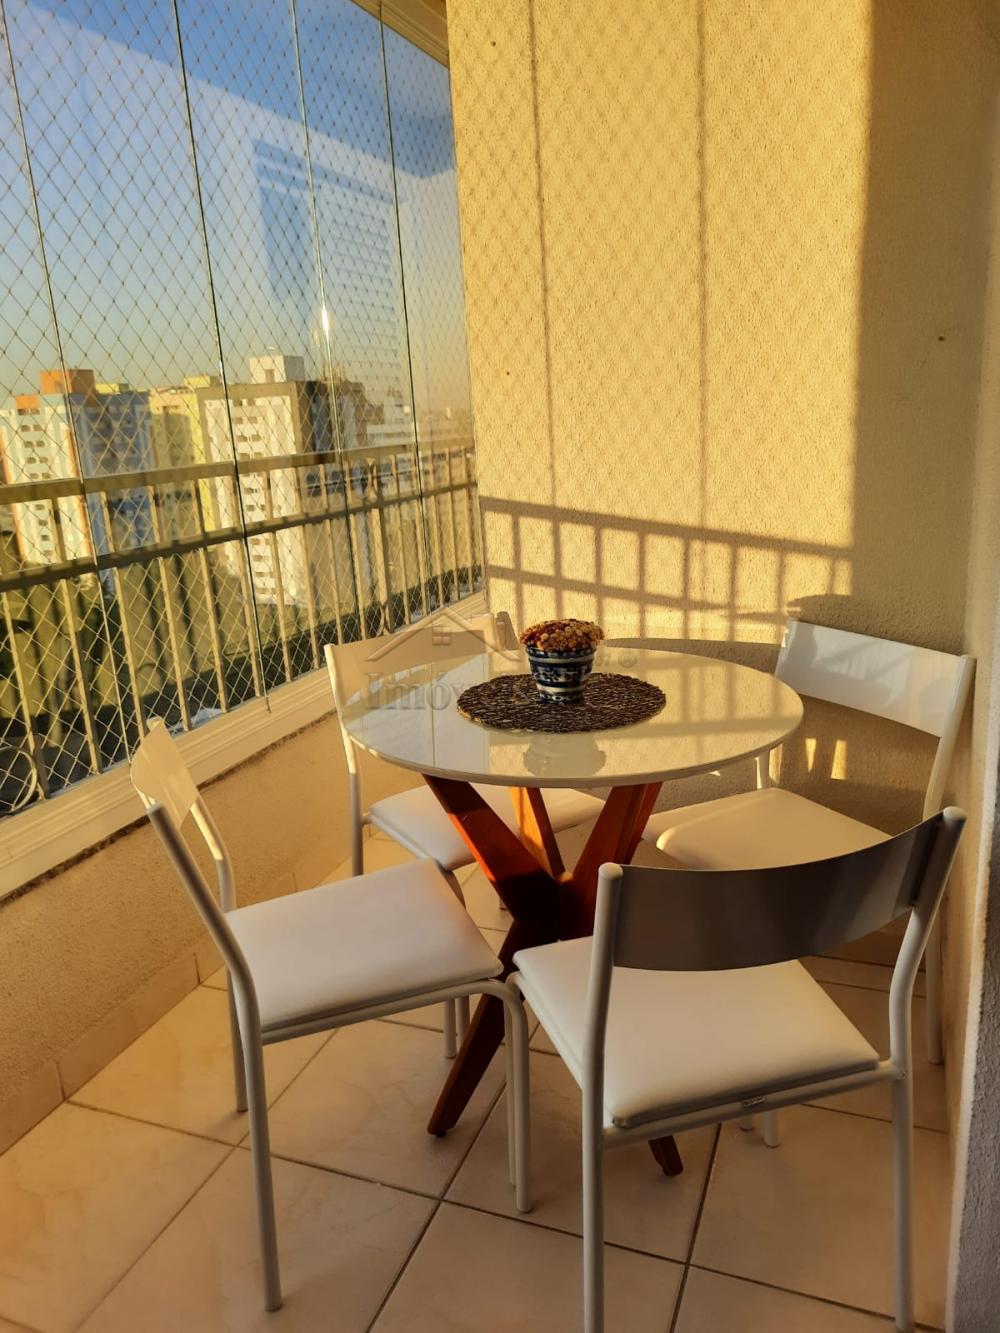 Comprar Apartamentos / Padrão em São José dos Campos R$ 750.000,00 - Foto 2